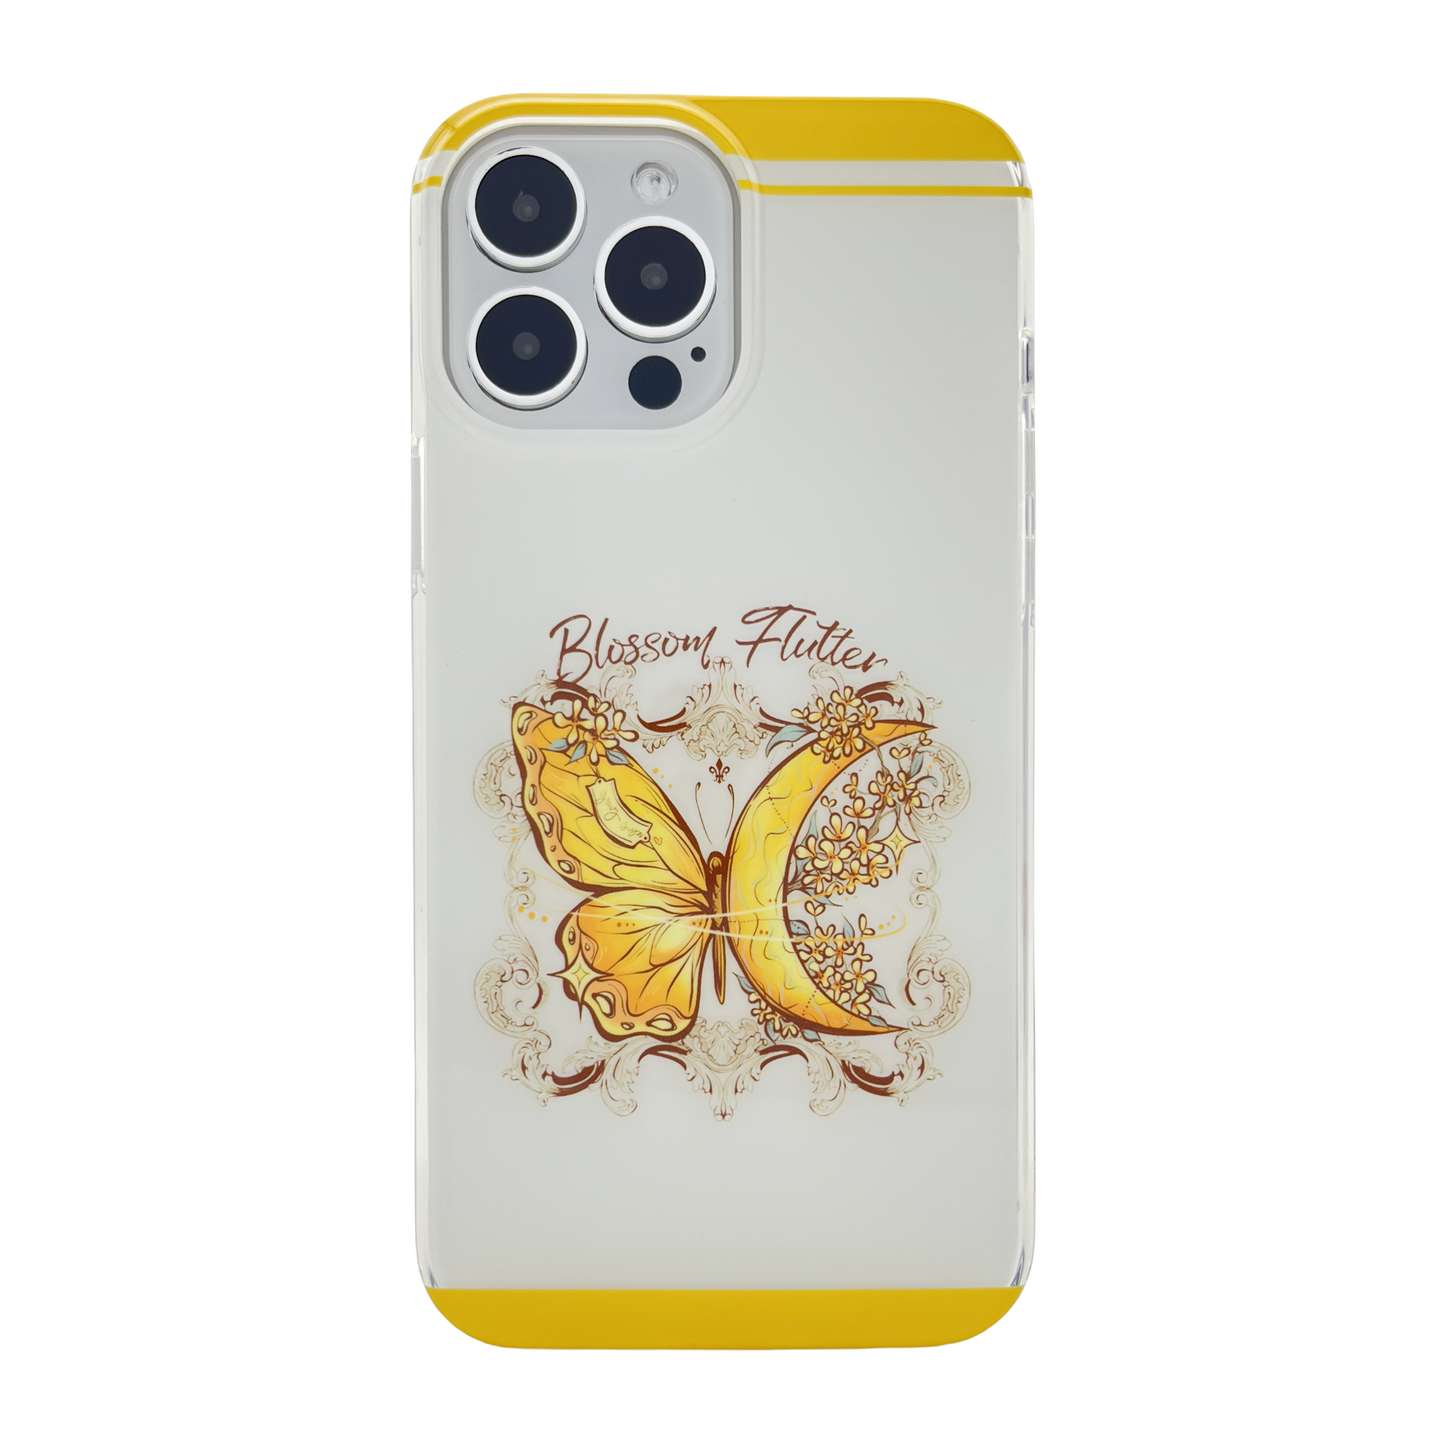 Blossom Flutter White iPhone Case